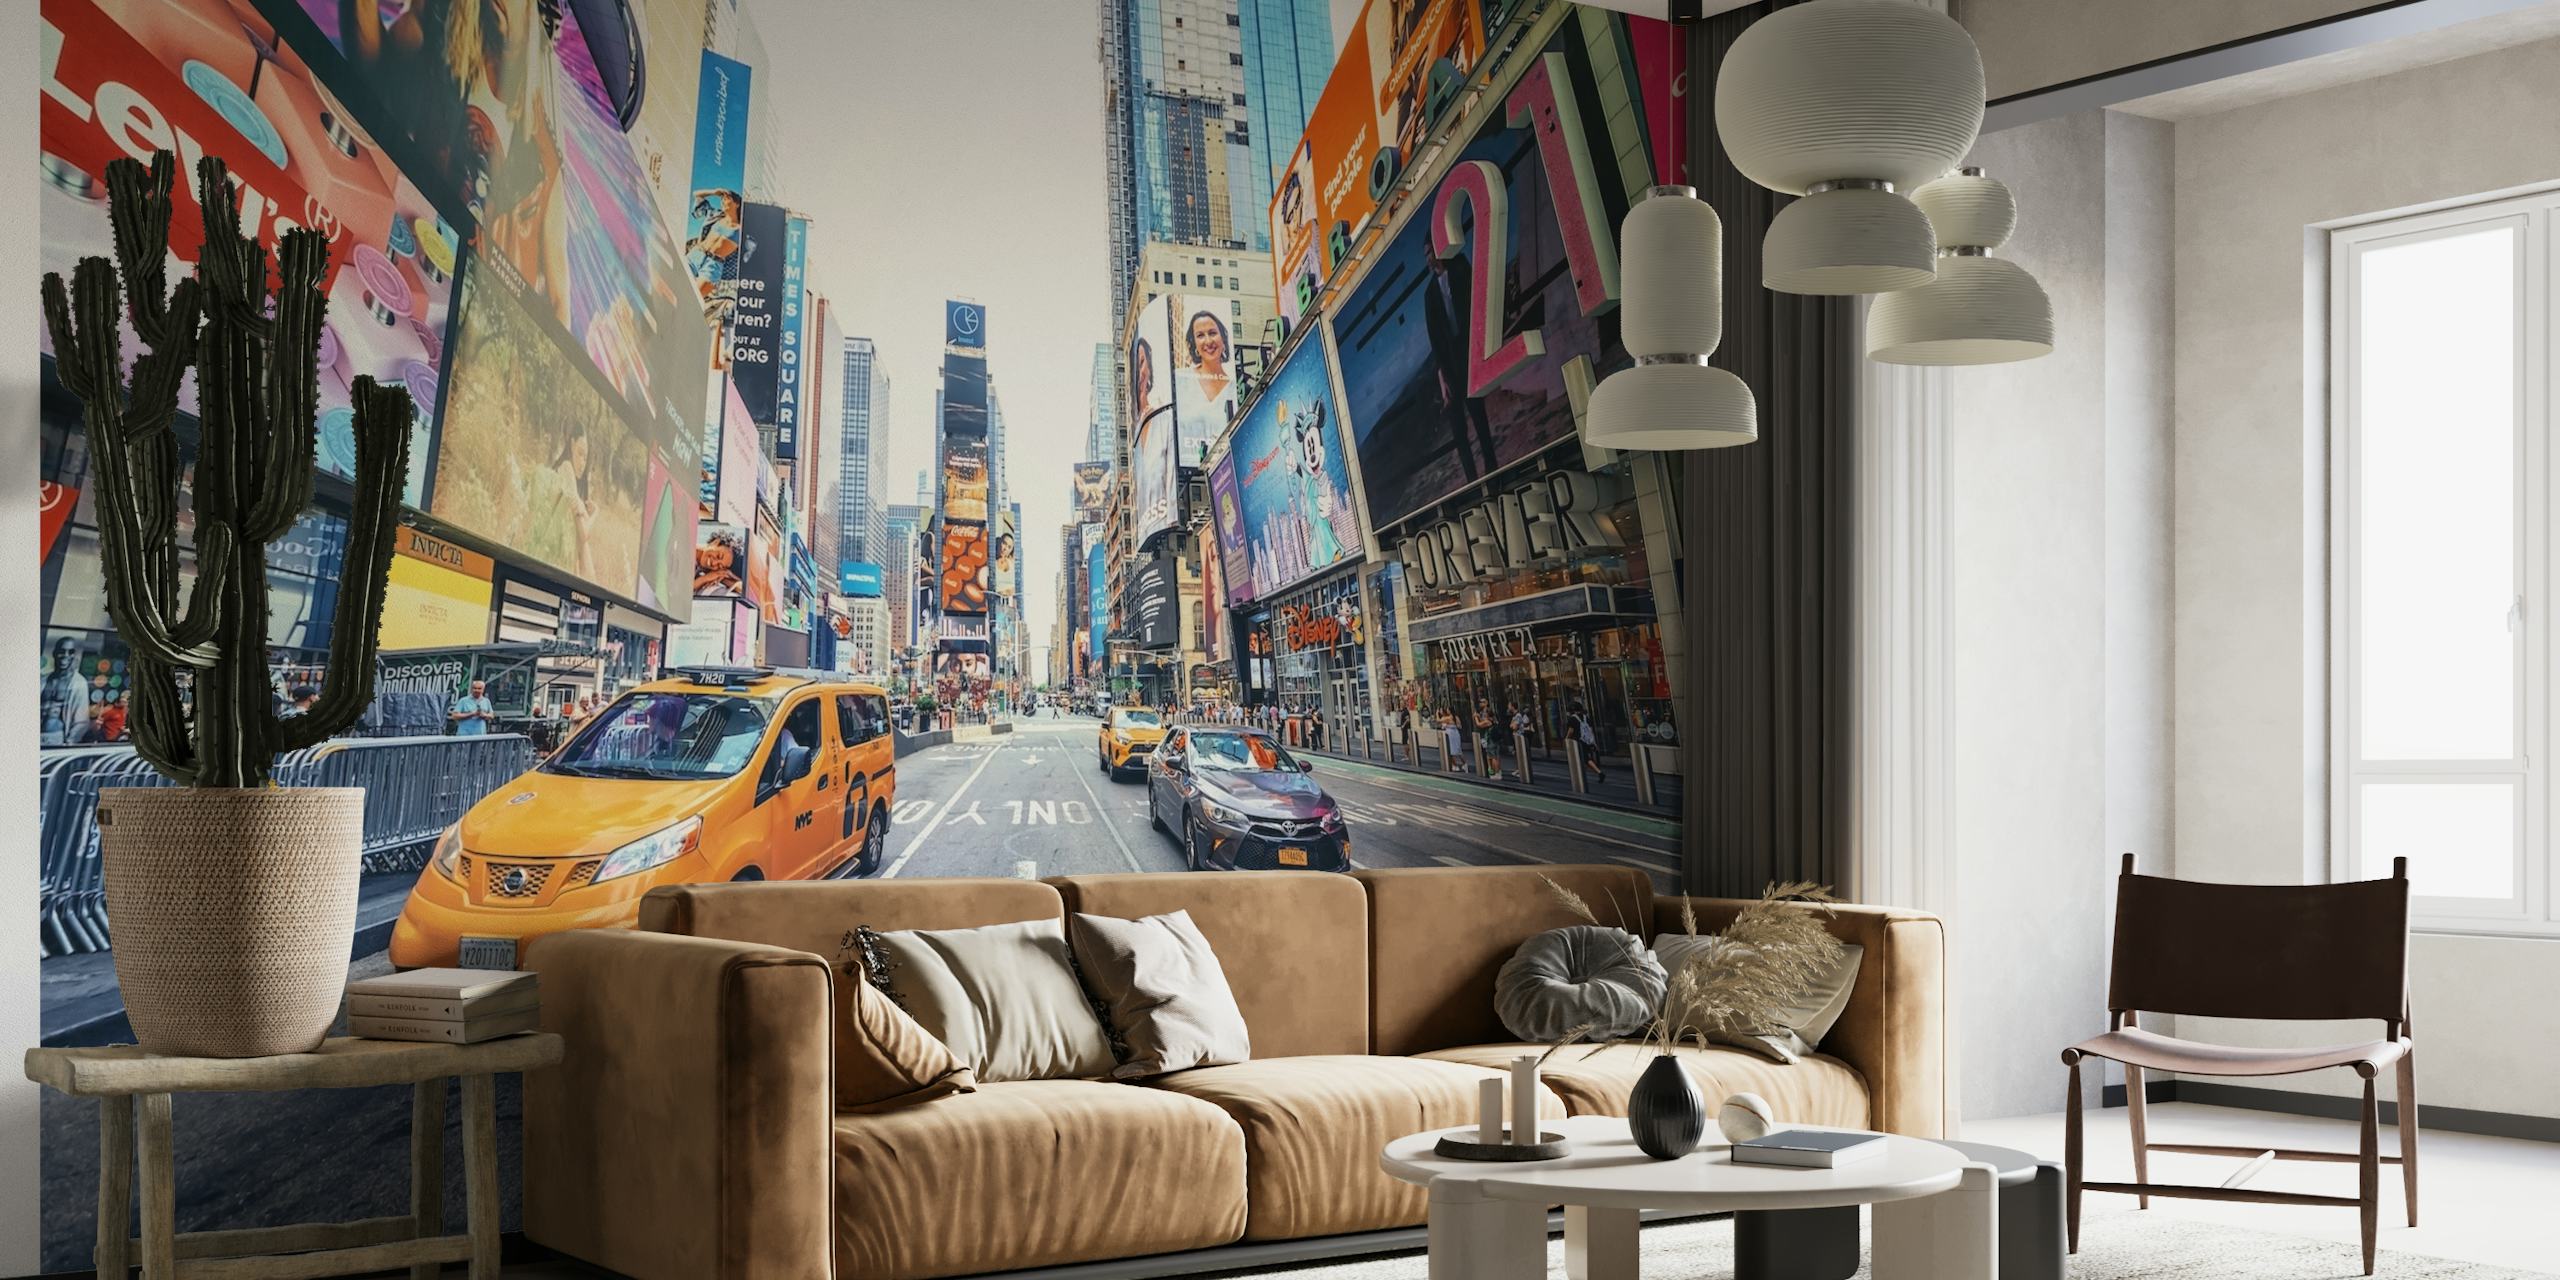 Times Squaren seinämaalaus, joka esittää vilkasta kaupunkielämää taksien ja mainostaulujen kera.